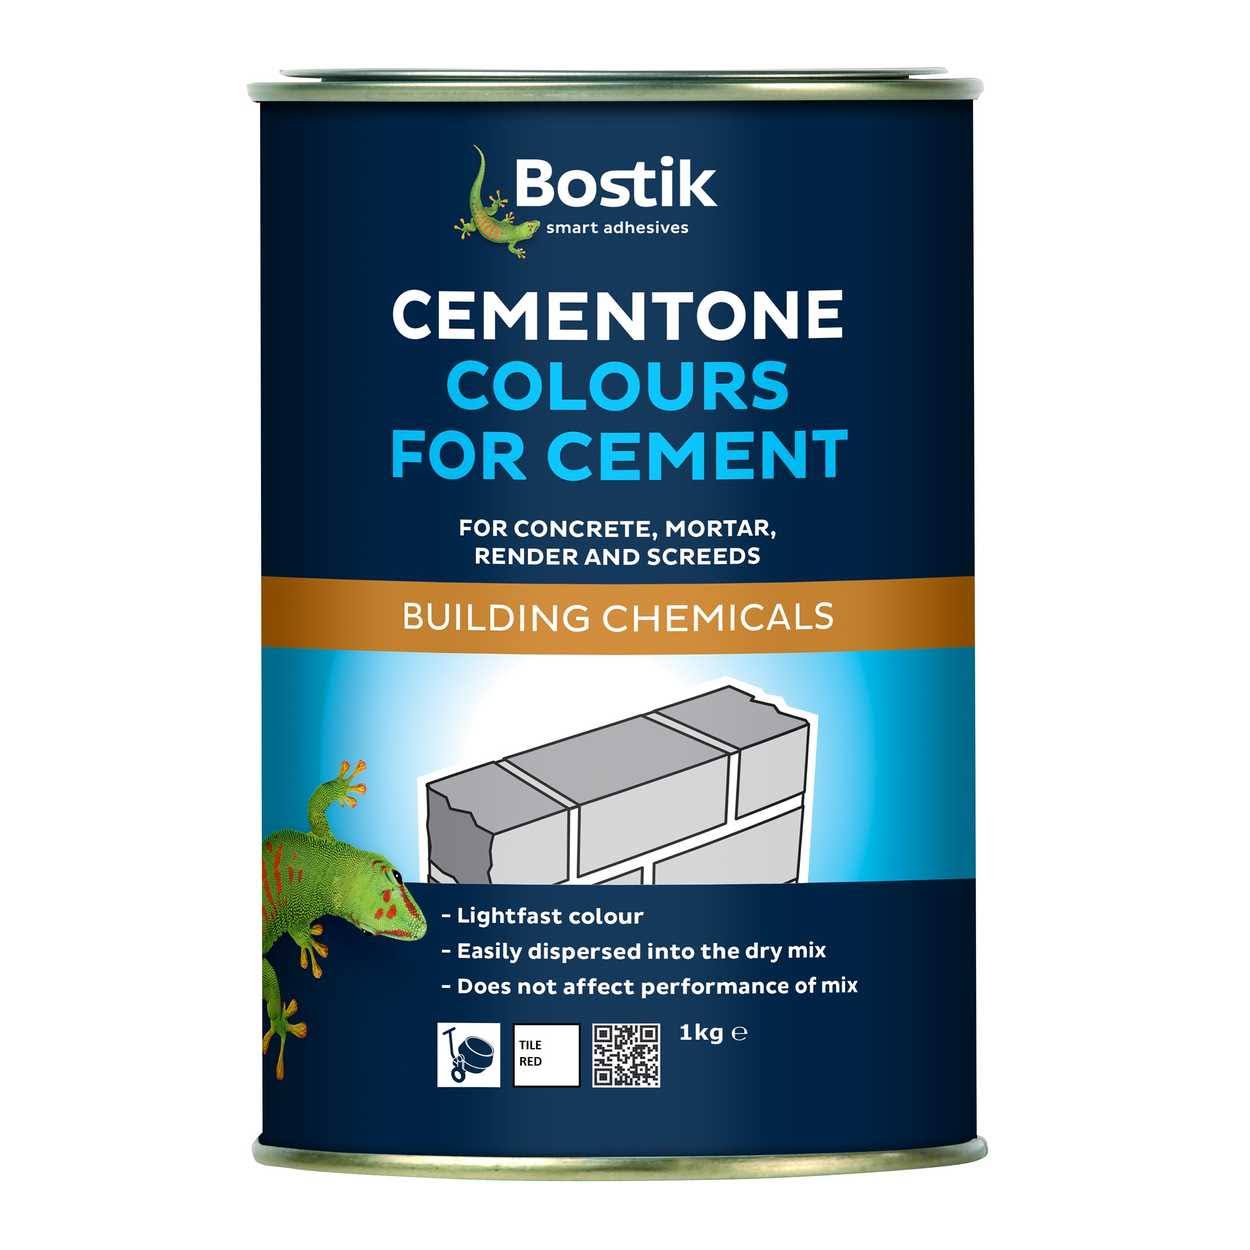 Bostik Cementone 1Kg Colours For Cement Tile Red